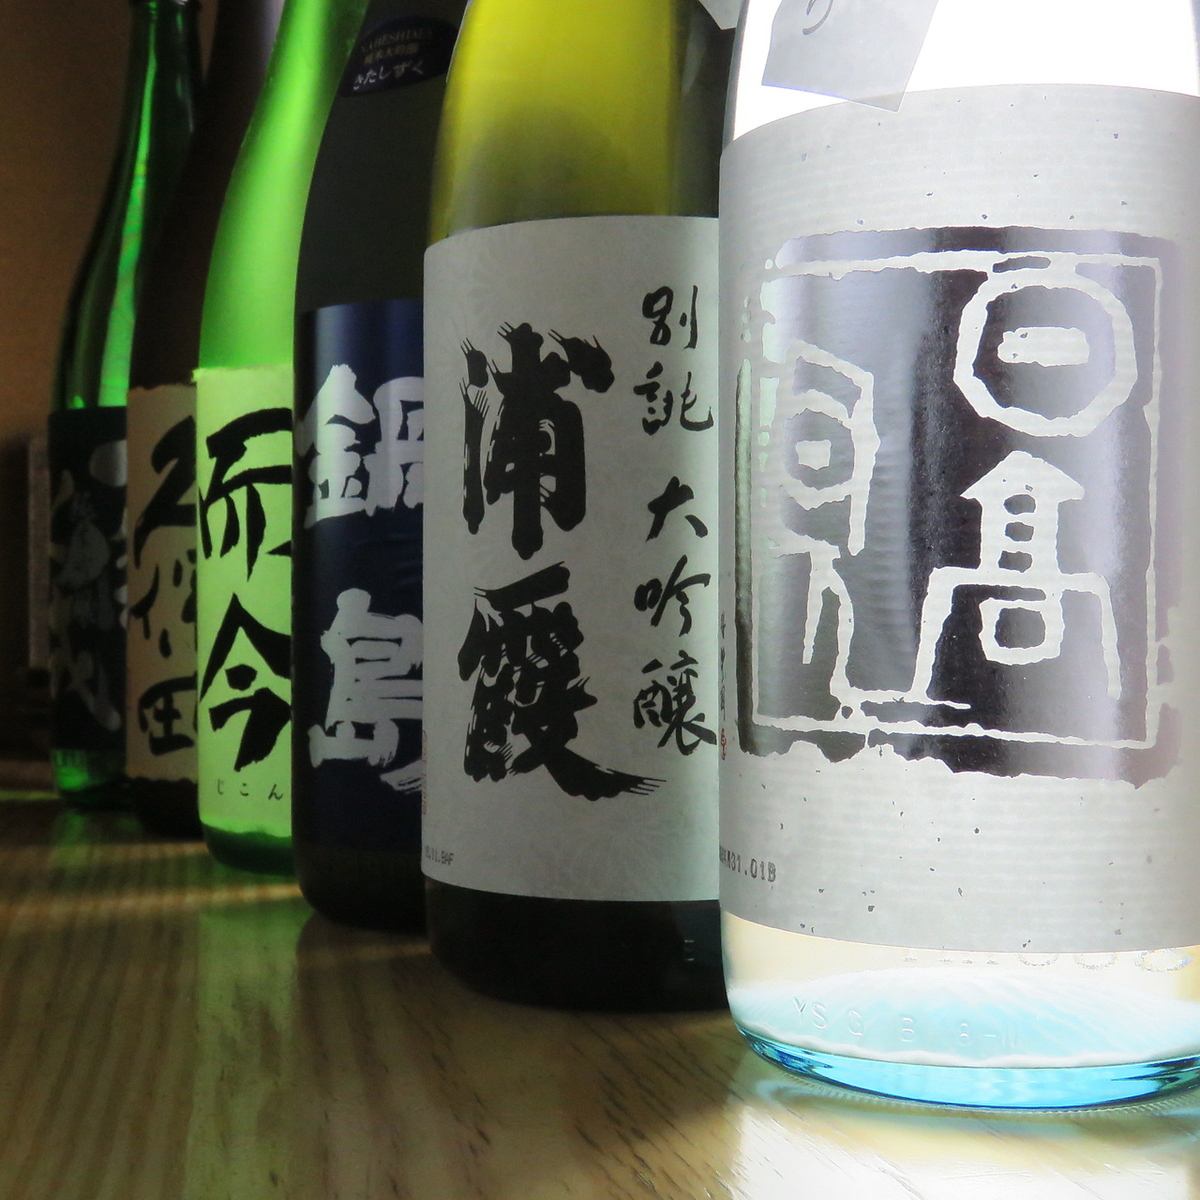 有很多正宗的日本蒸馏酒/当地清酒等库存！